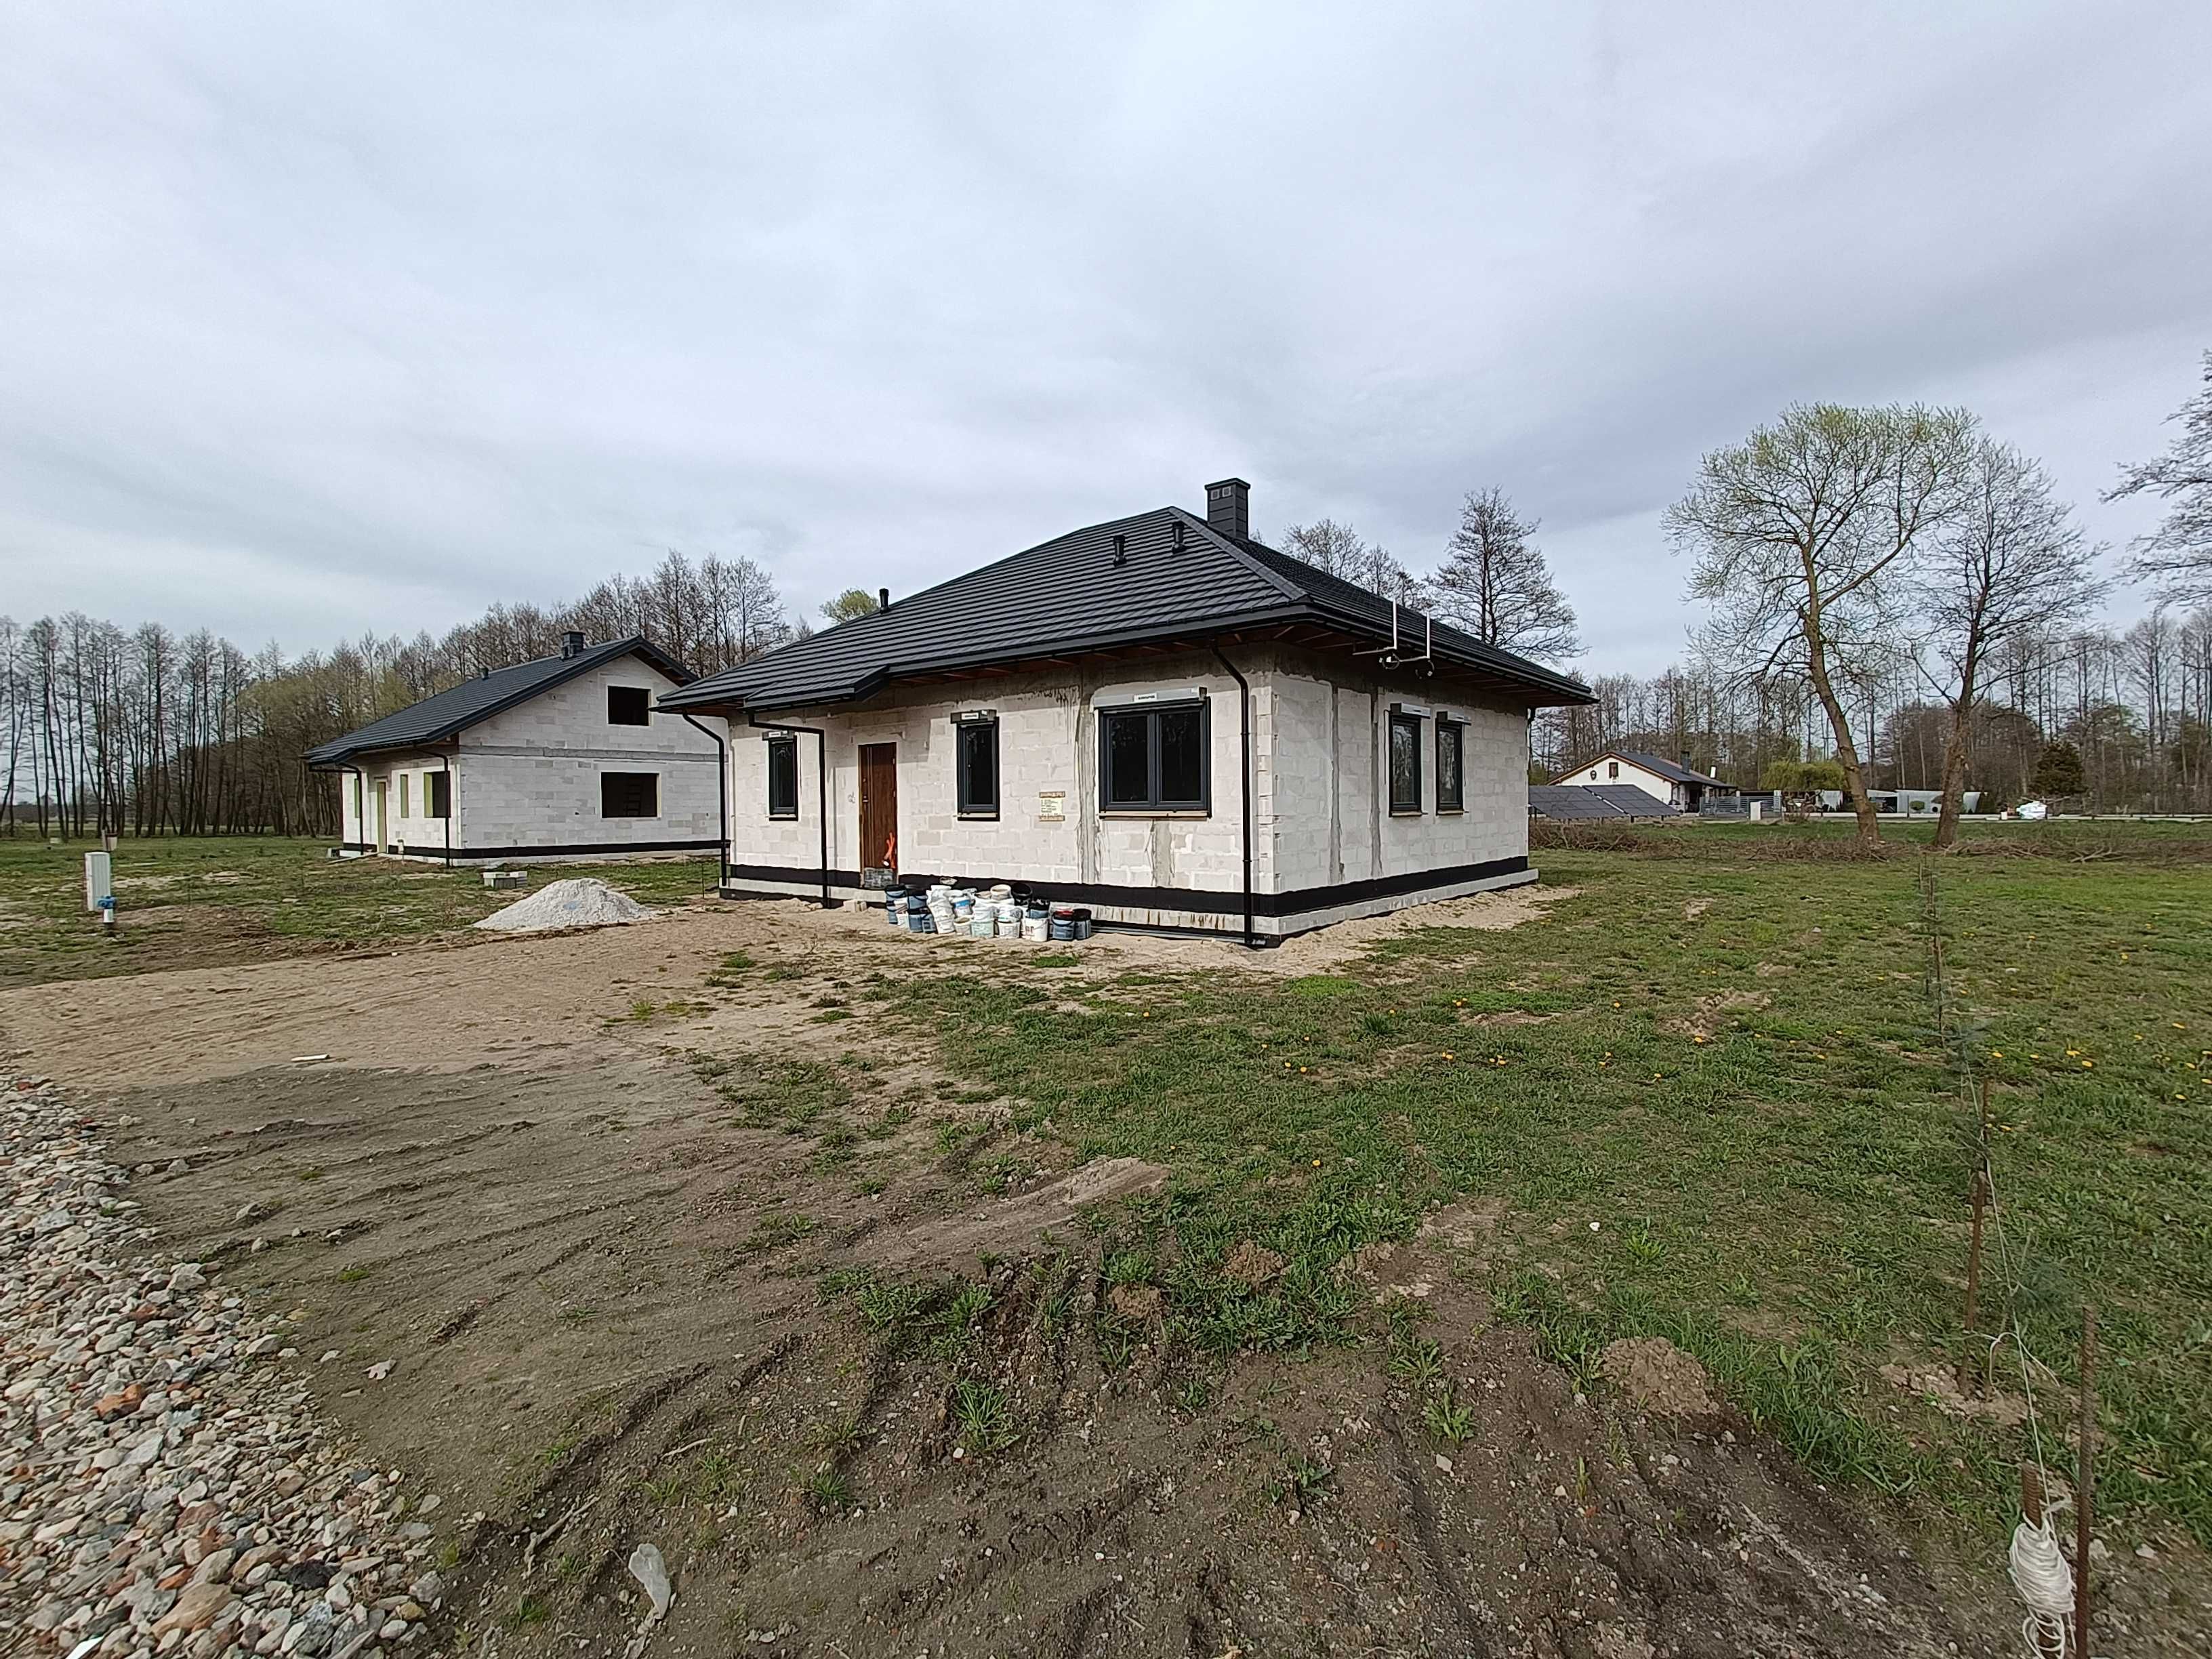 Nowy dom 313/4 w stanie surowym zamkniętym (Chełmno - Klamry)